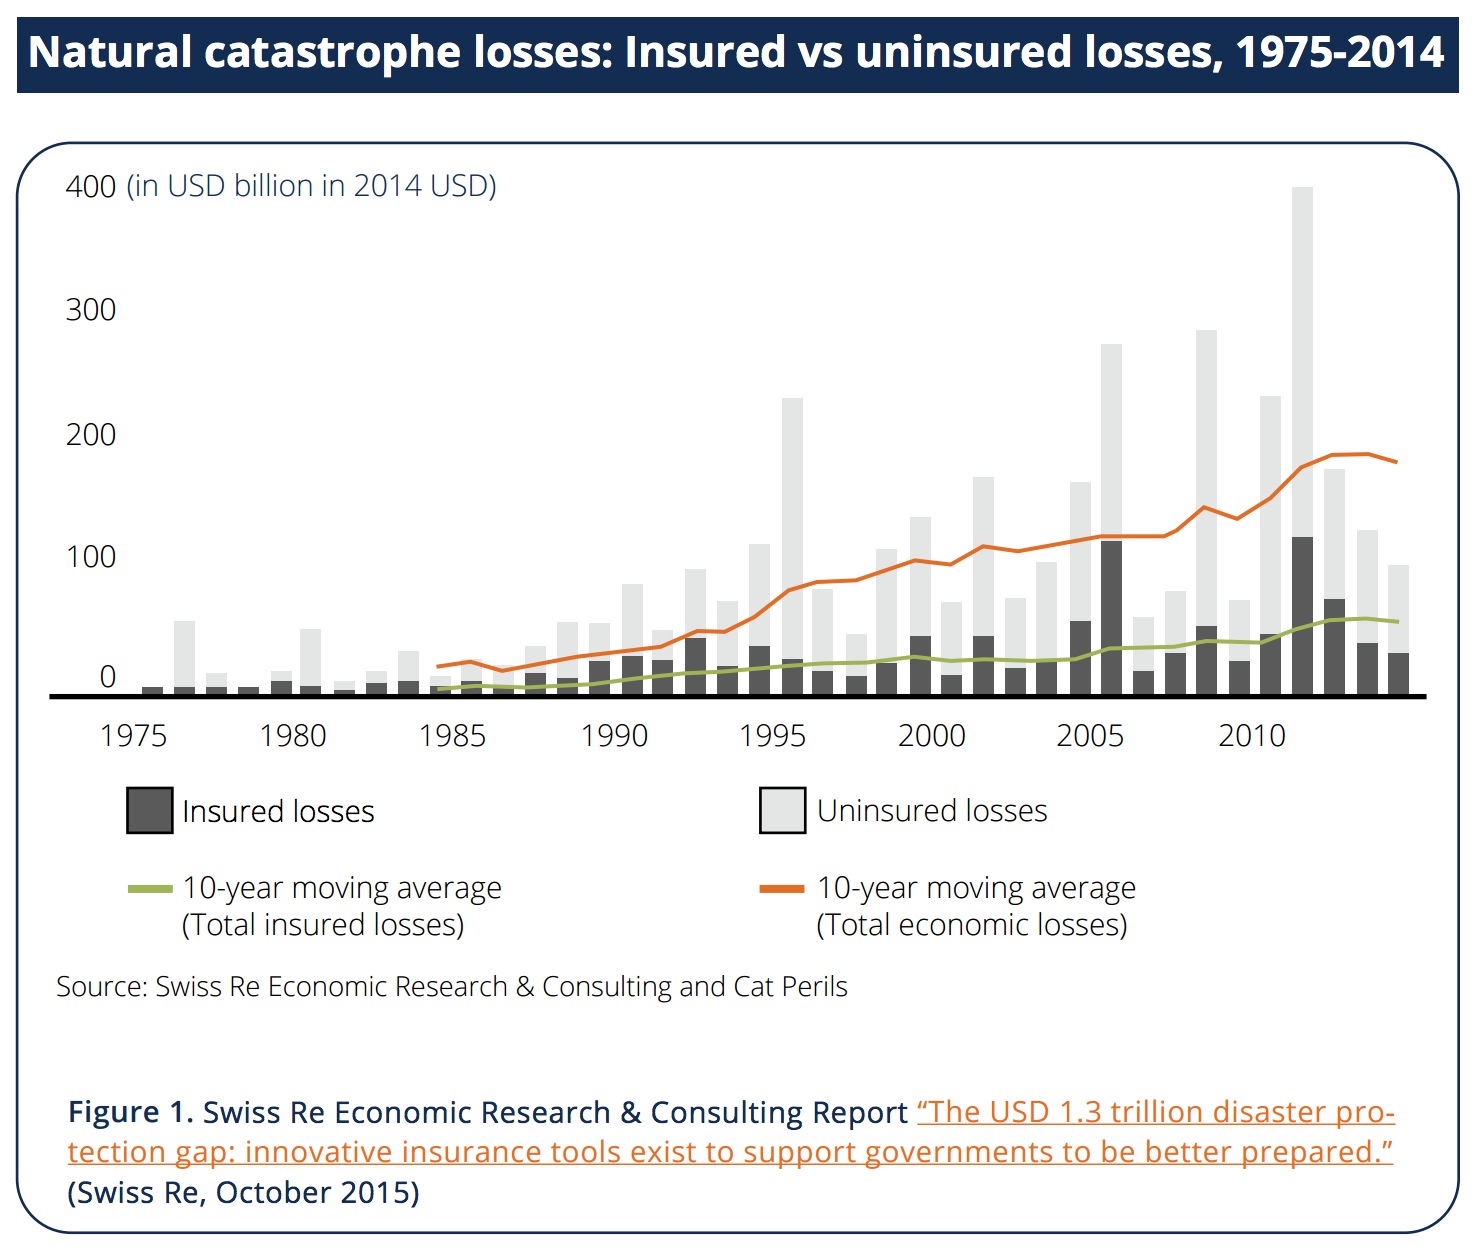 Natural catastrophe losses: Insured vs uninsured losses, 1975-2014